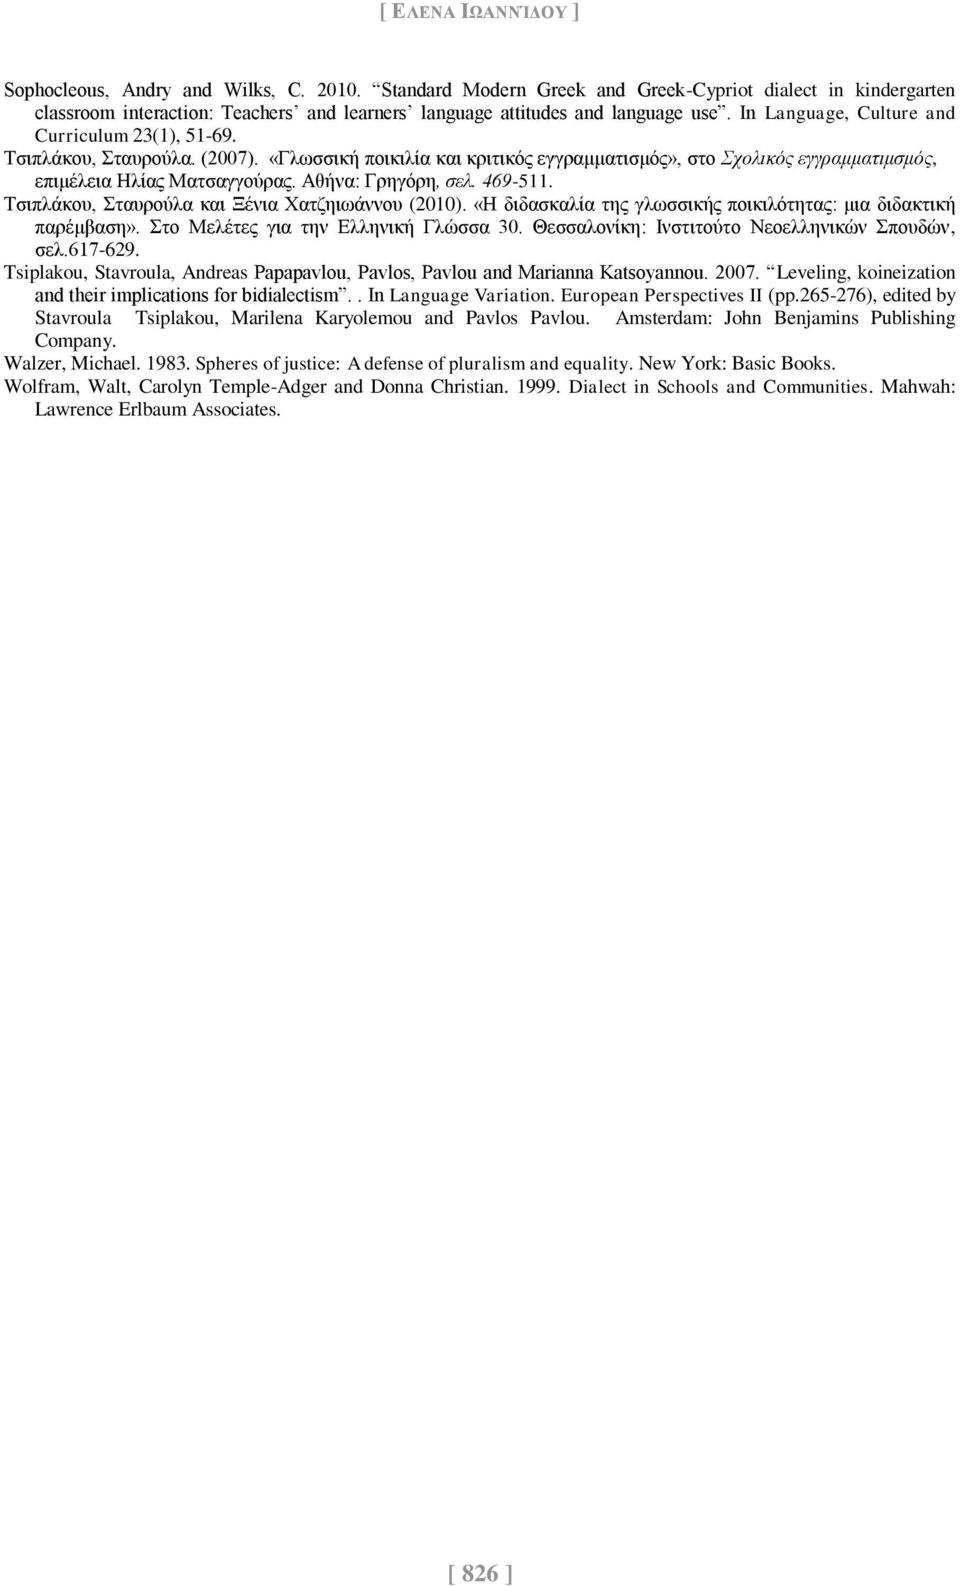 Τσιπλάκου, Σταυρούλα. (2007). «Γλωσσική ποικιλία και κριτικός εγγραμματισμός», στο Σχολικός εγγραμματιμσμός, επιμέλεια Ηλίας Ματσαγγούρας. Αθήνα: Γρηγόρη, σελ. 469-511.